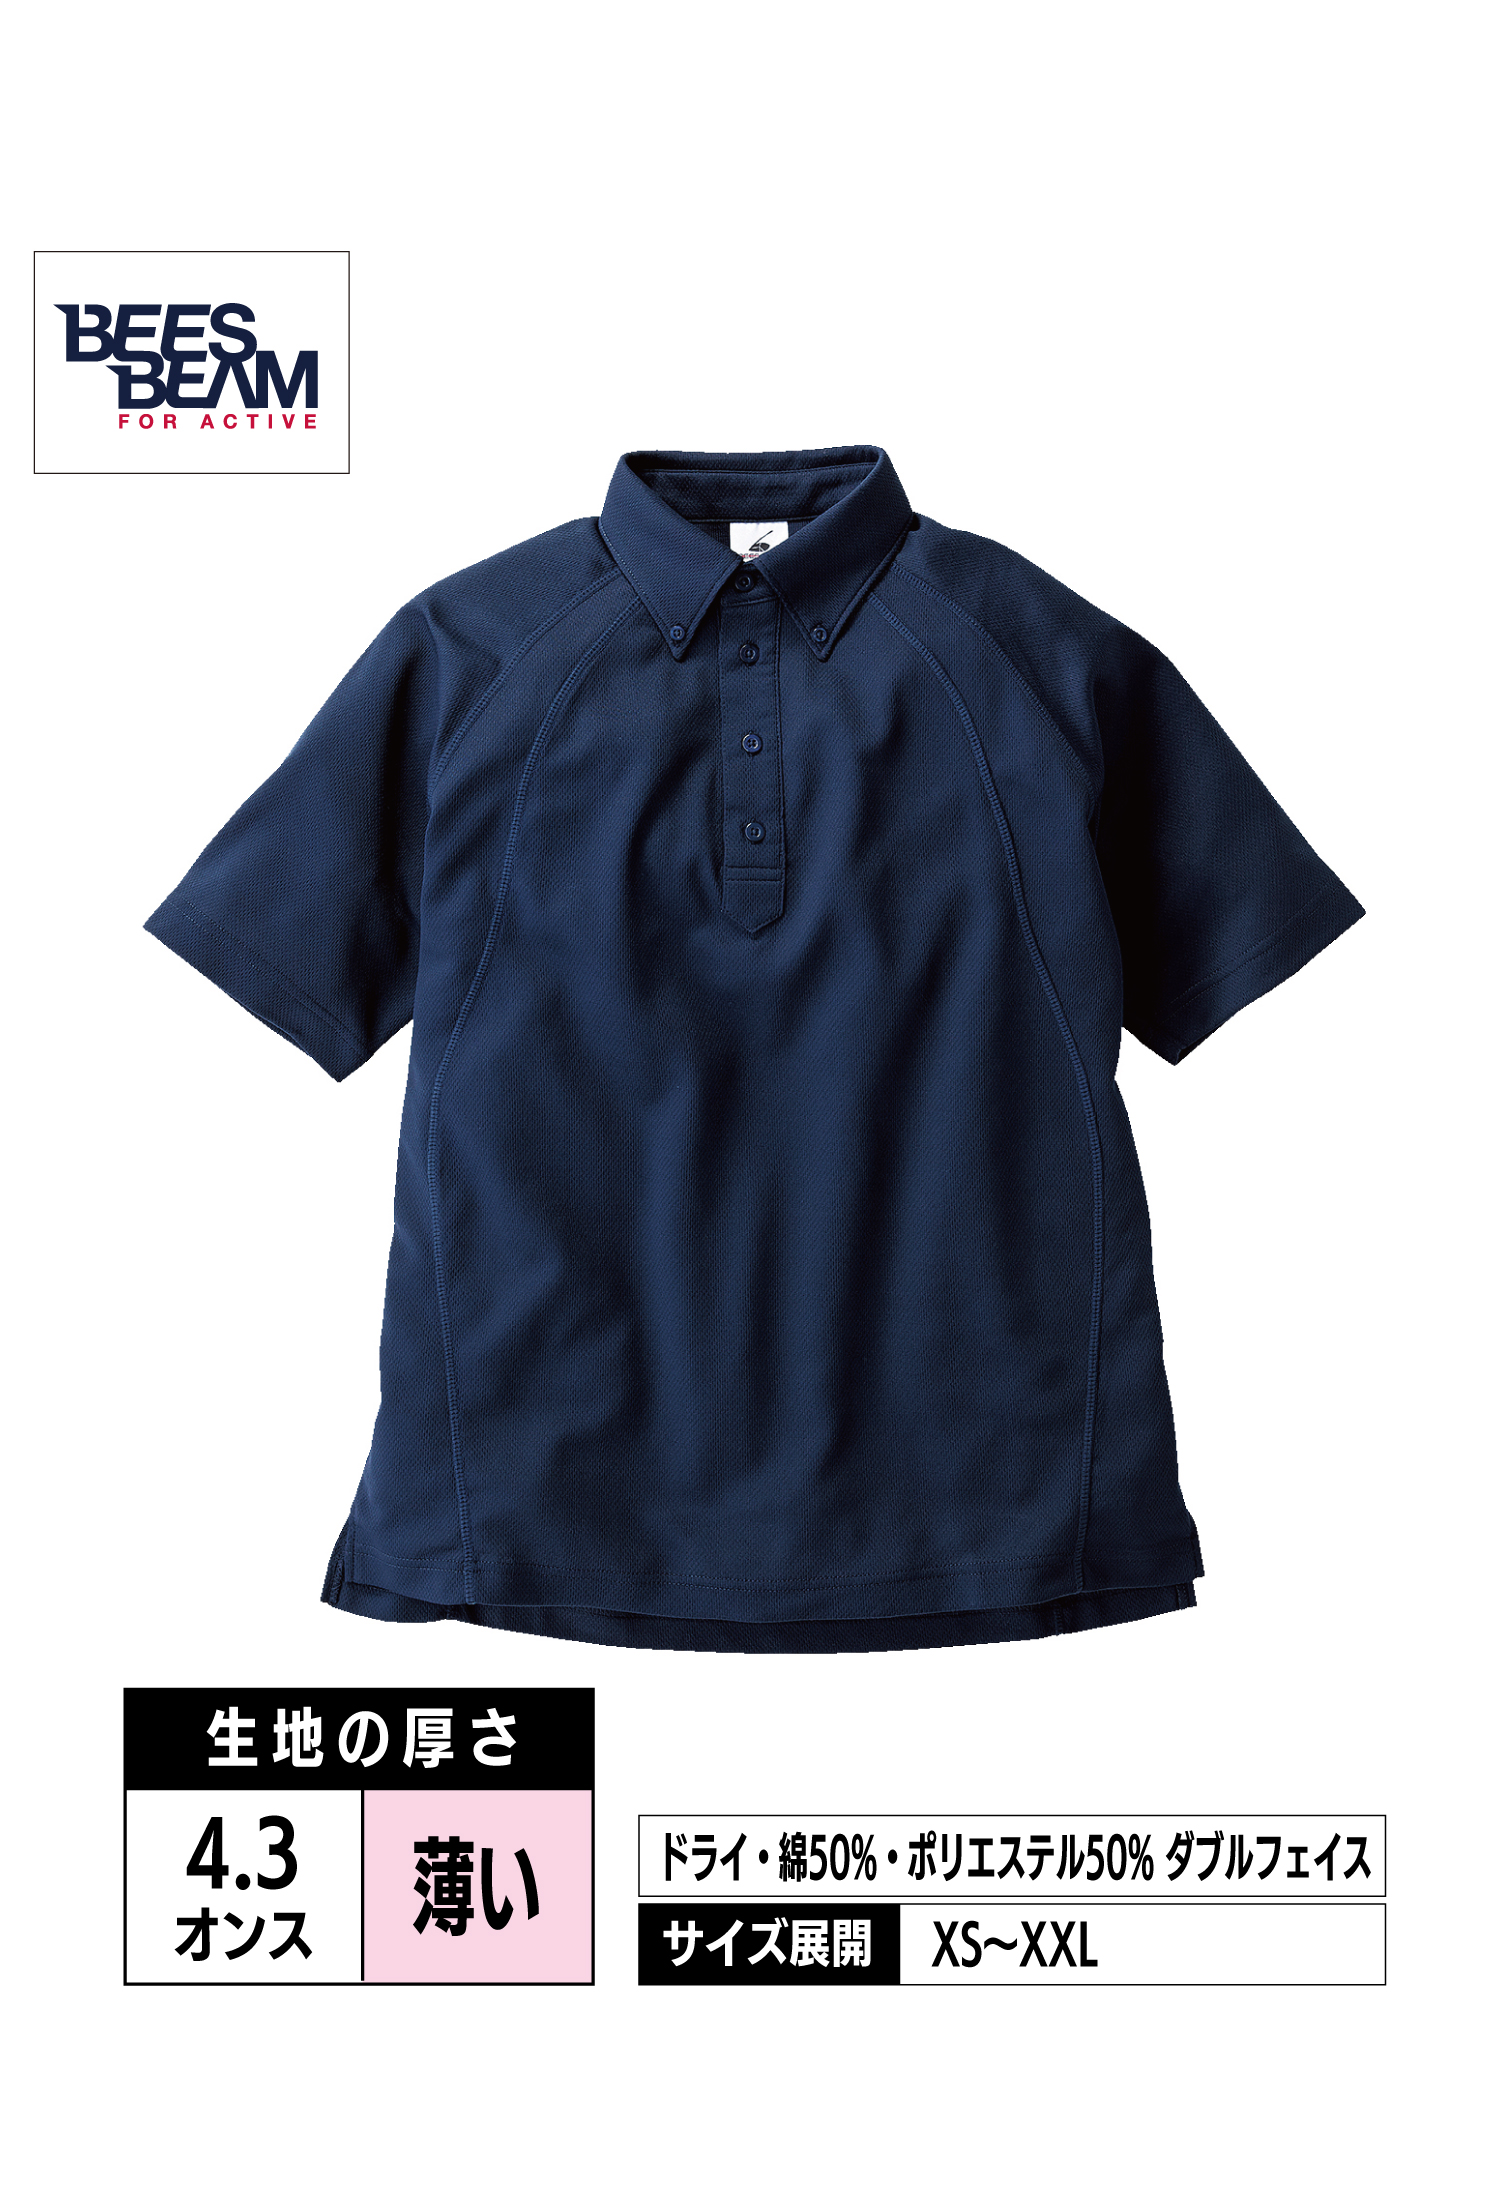 BDP-262｜ボタンダウン ポロシャツ【全6色】BEESBEAM